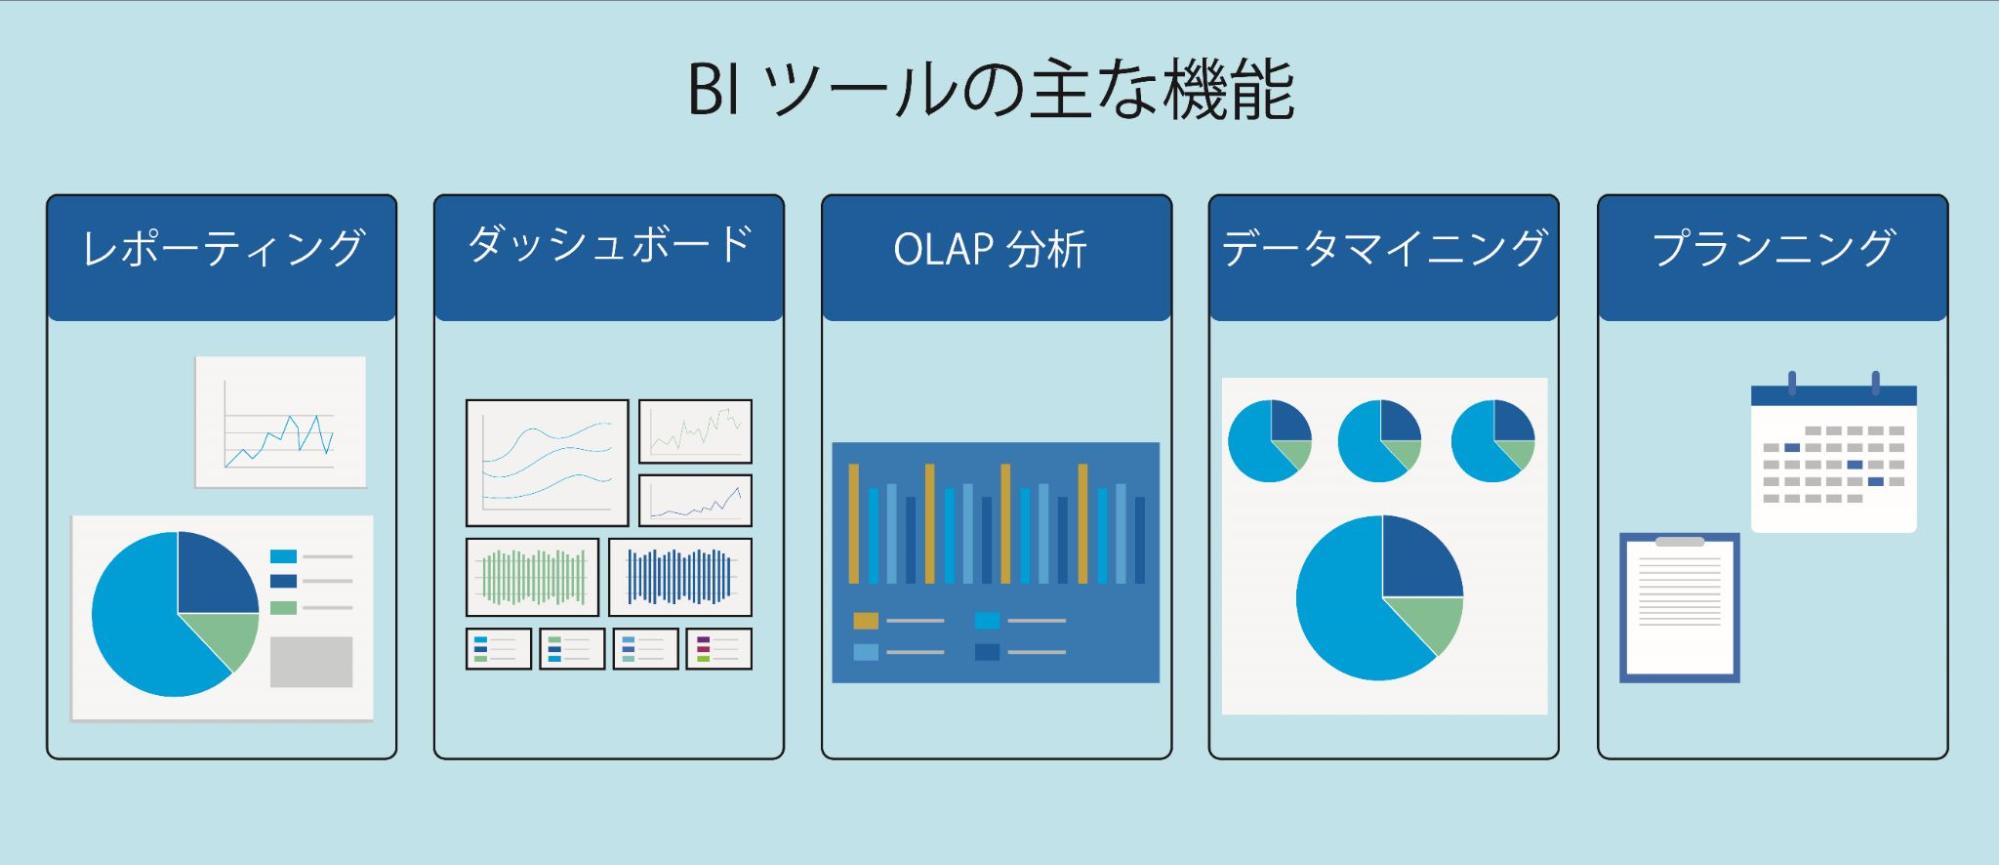 BIツールの主な機能の画像。レポーティング、ダッシュボード、OLAP分析、データマイニング、プランニング